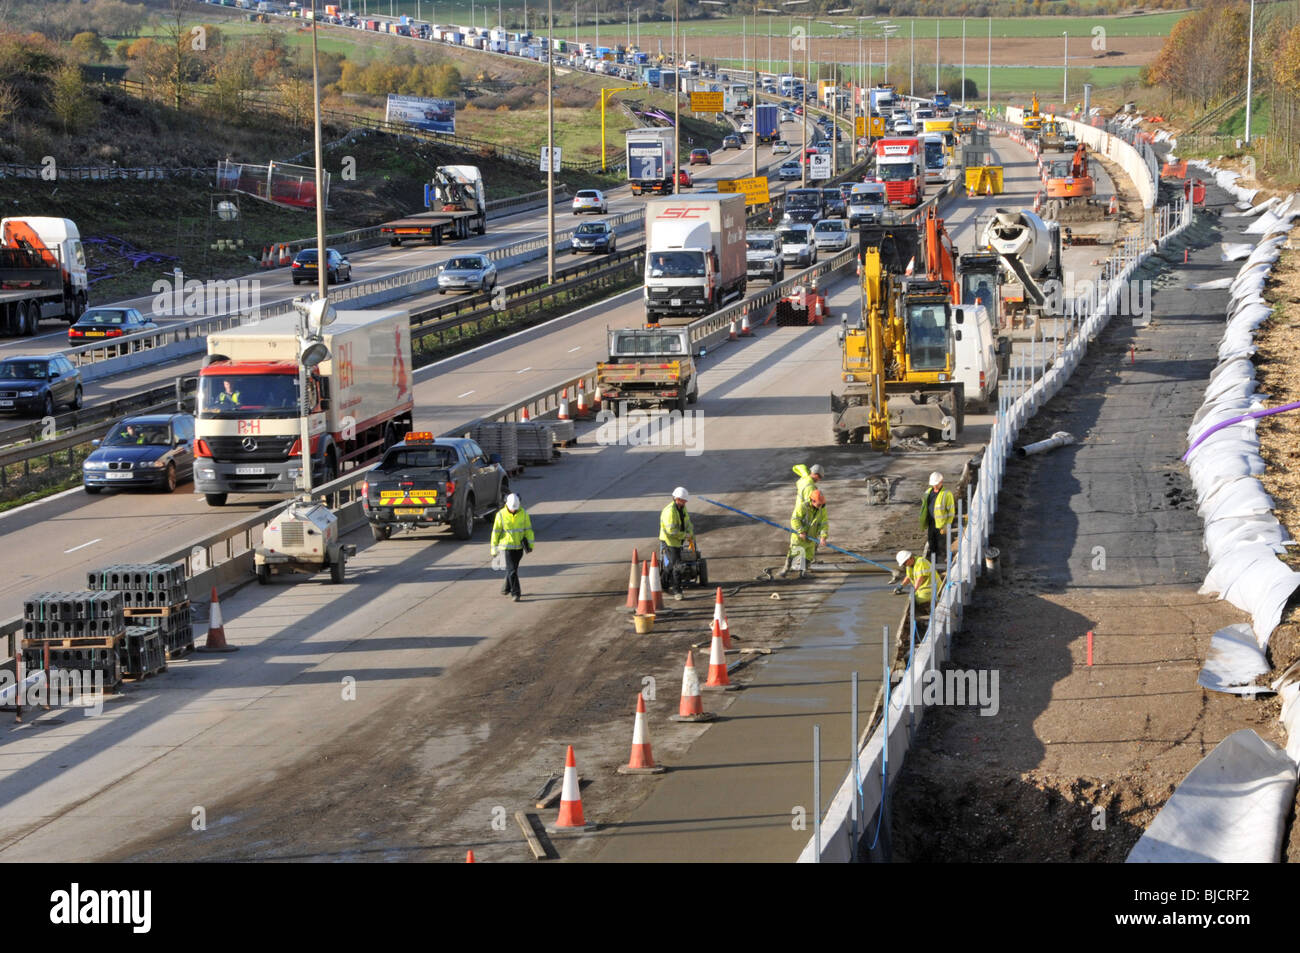 Génie civil travaux routiers ouvriers de construction et machines travaillant occupé construction de site d'autoroute M25 total de quatre voies route Essex paysage Angleterre Royaume-Uni Banque D'Images